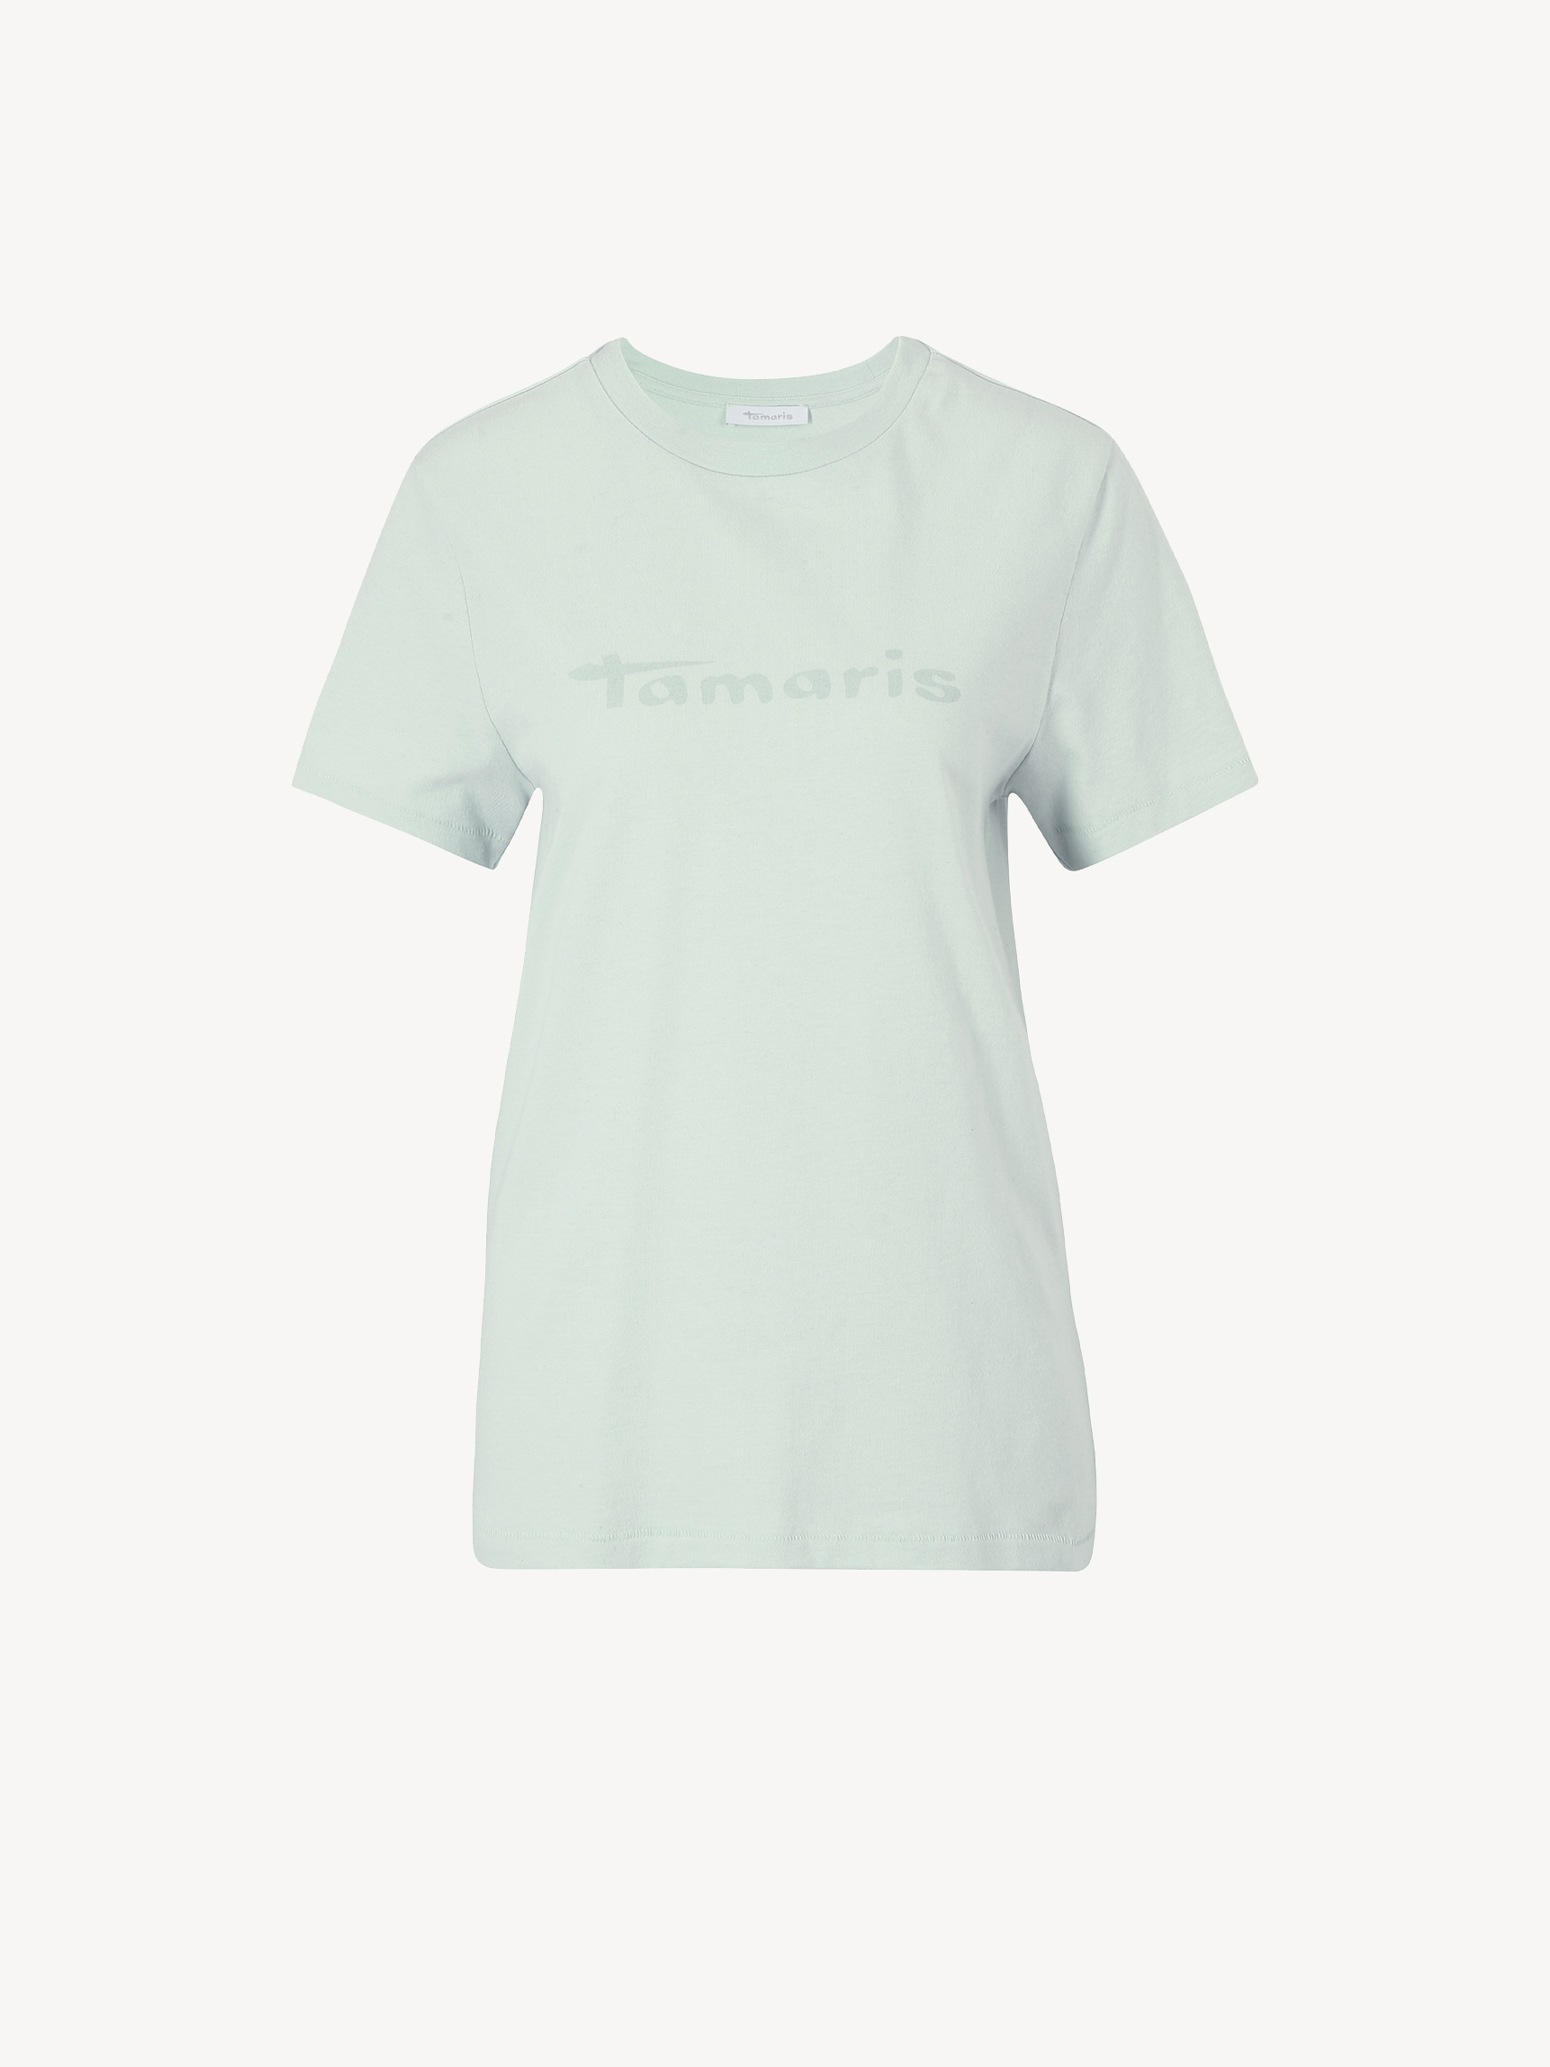 Buy Tamaris Shirts & Tops now! online